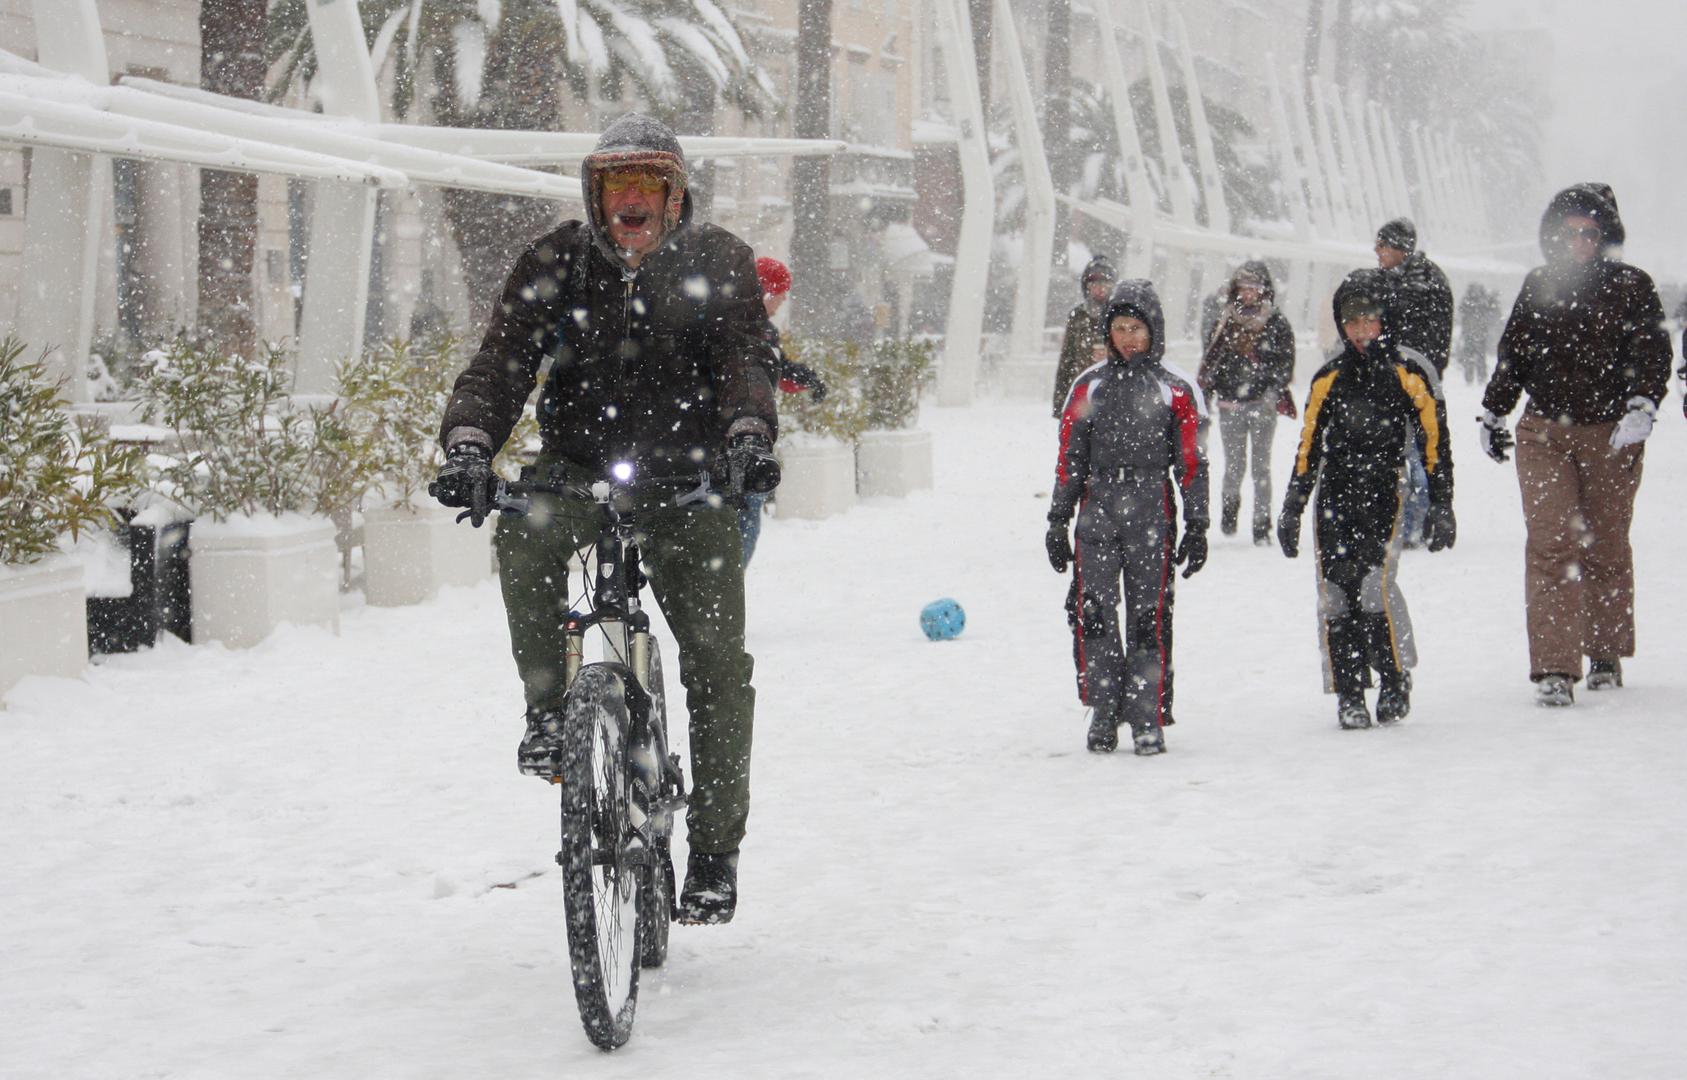 03.02.2012., Split - Prolaznici uzivaju u snijegu koji je prekrio Rivu. Photo: Ivana Ivanovic/PIXSELL